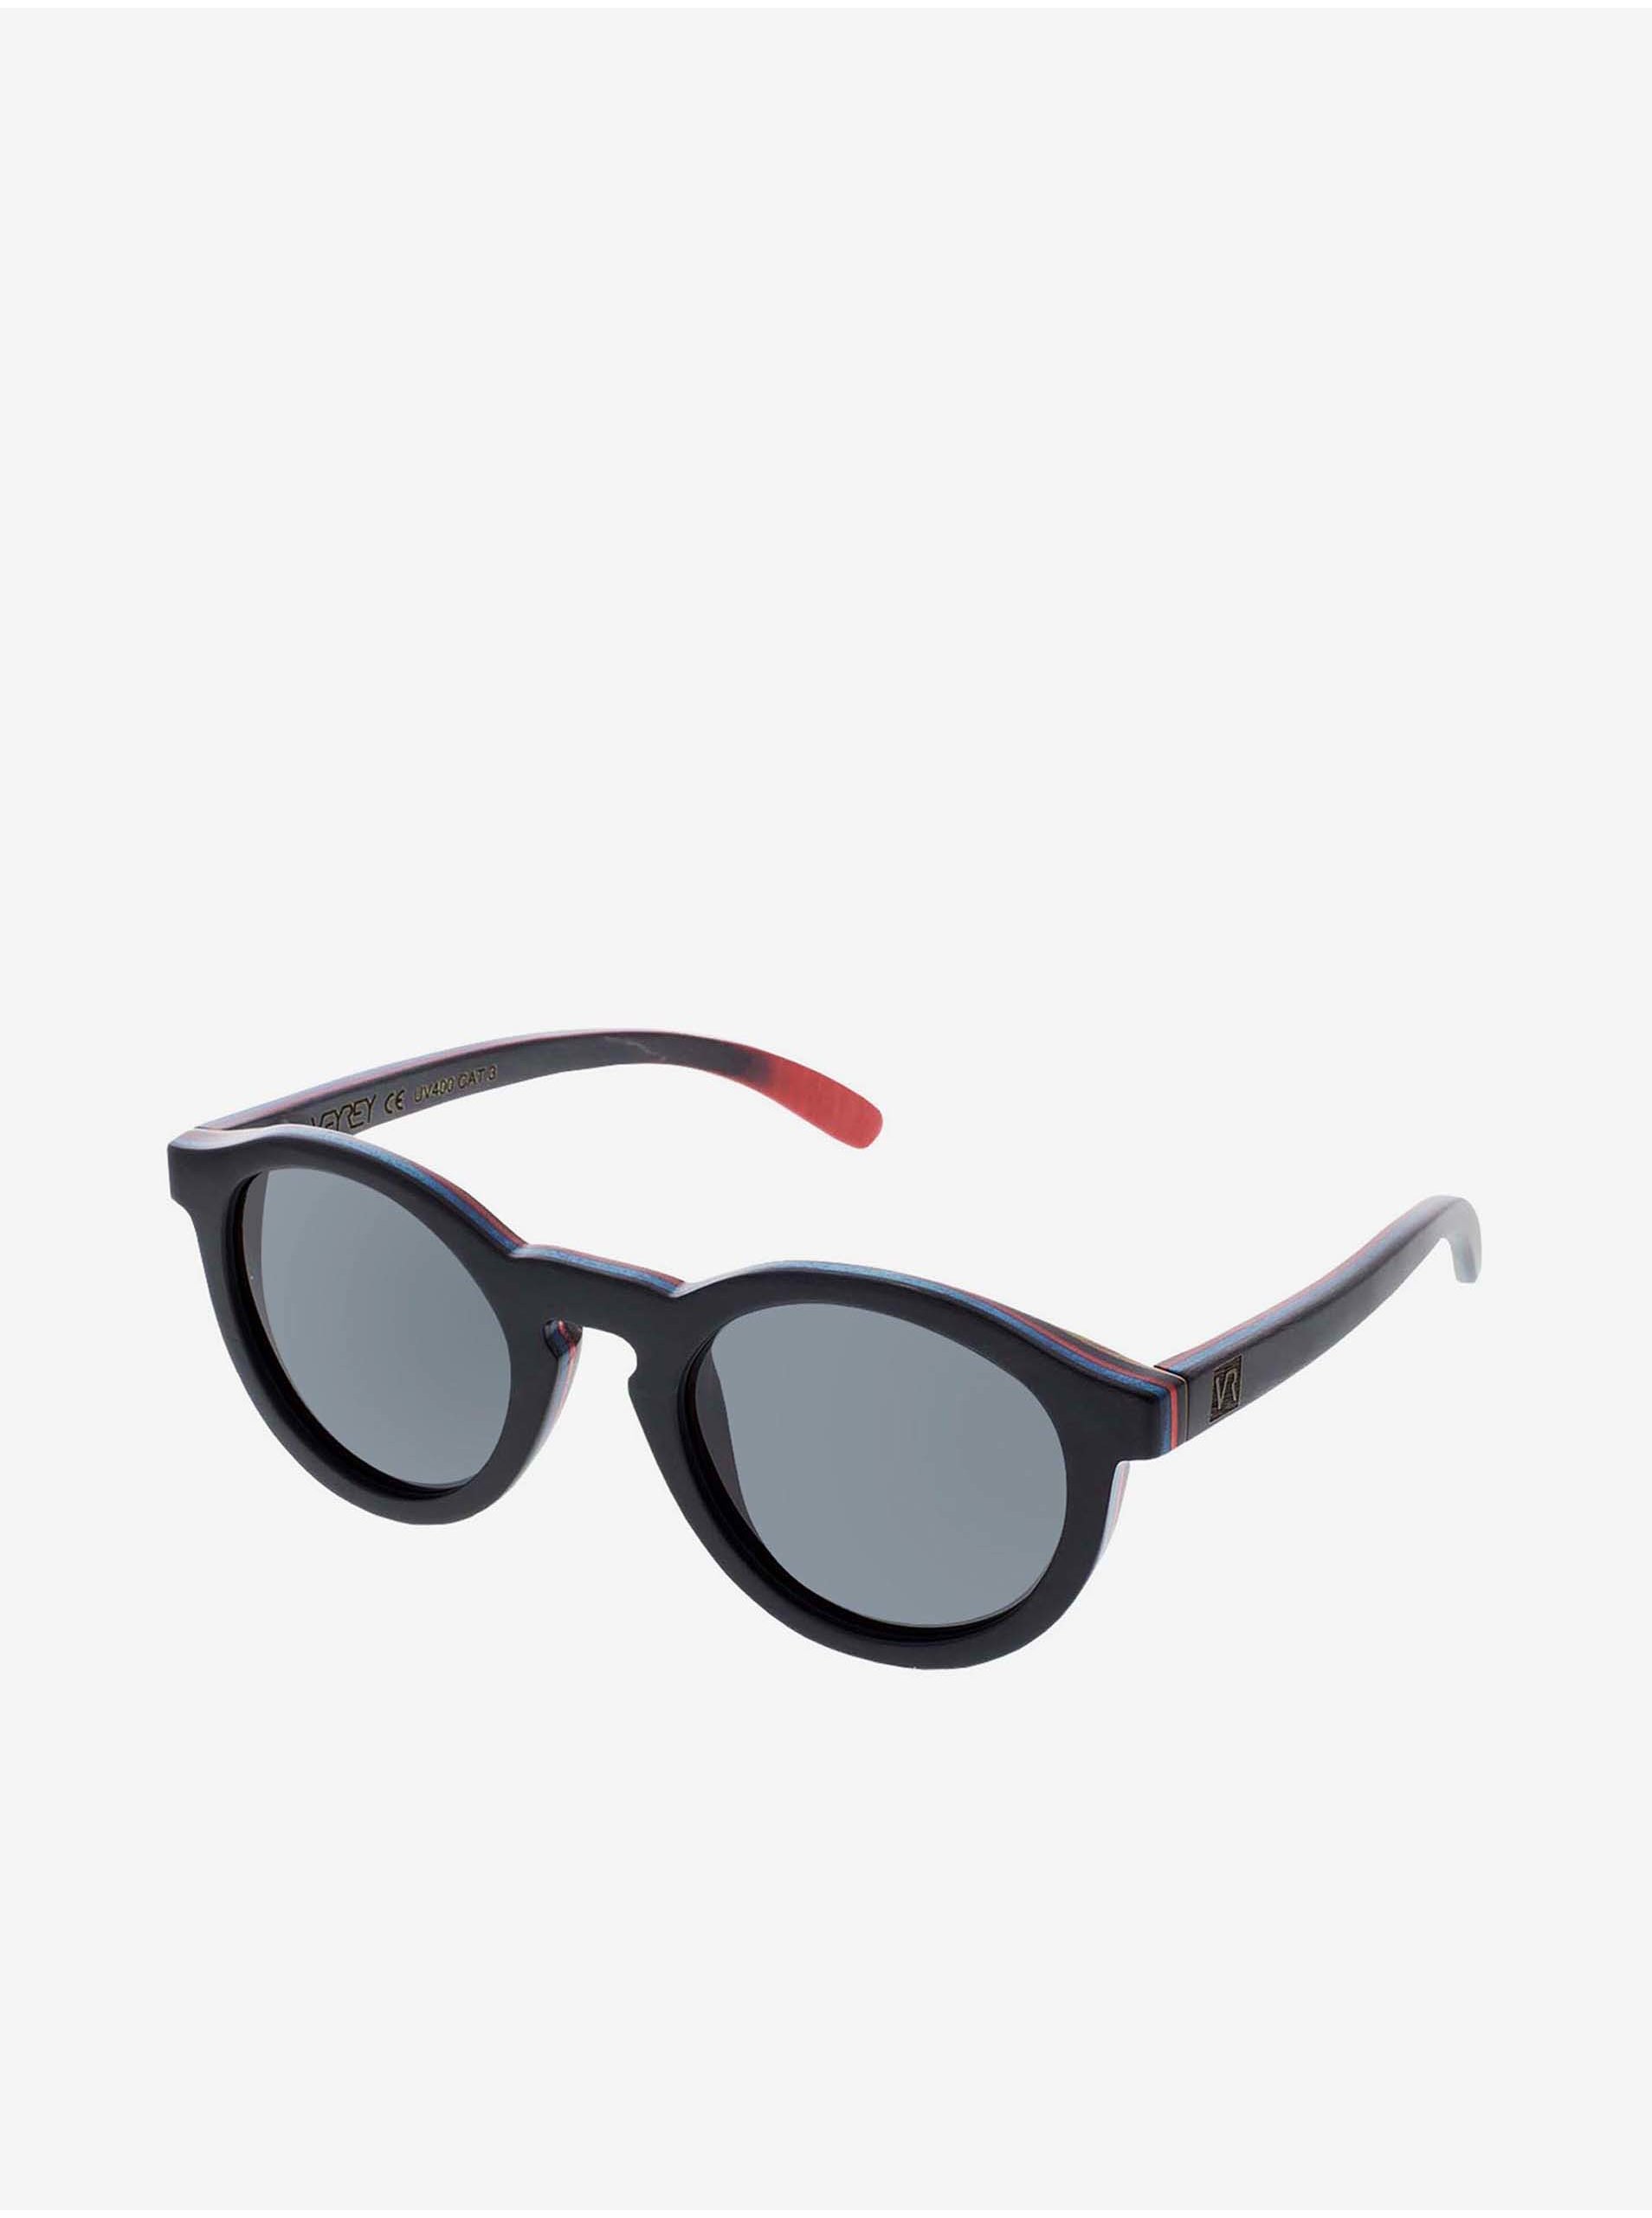 Lacno VeyRey Slnečné okuliare drevené polarizačné oválne Hornbeam čierne sklá